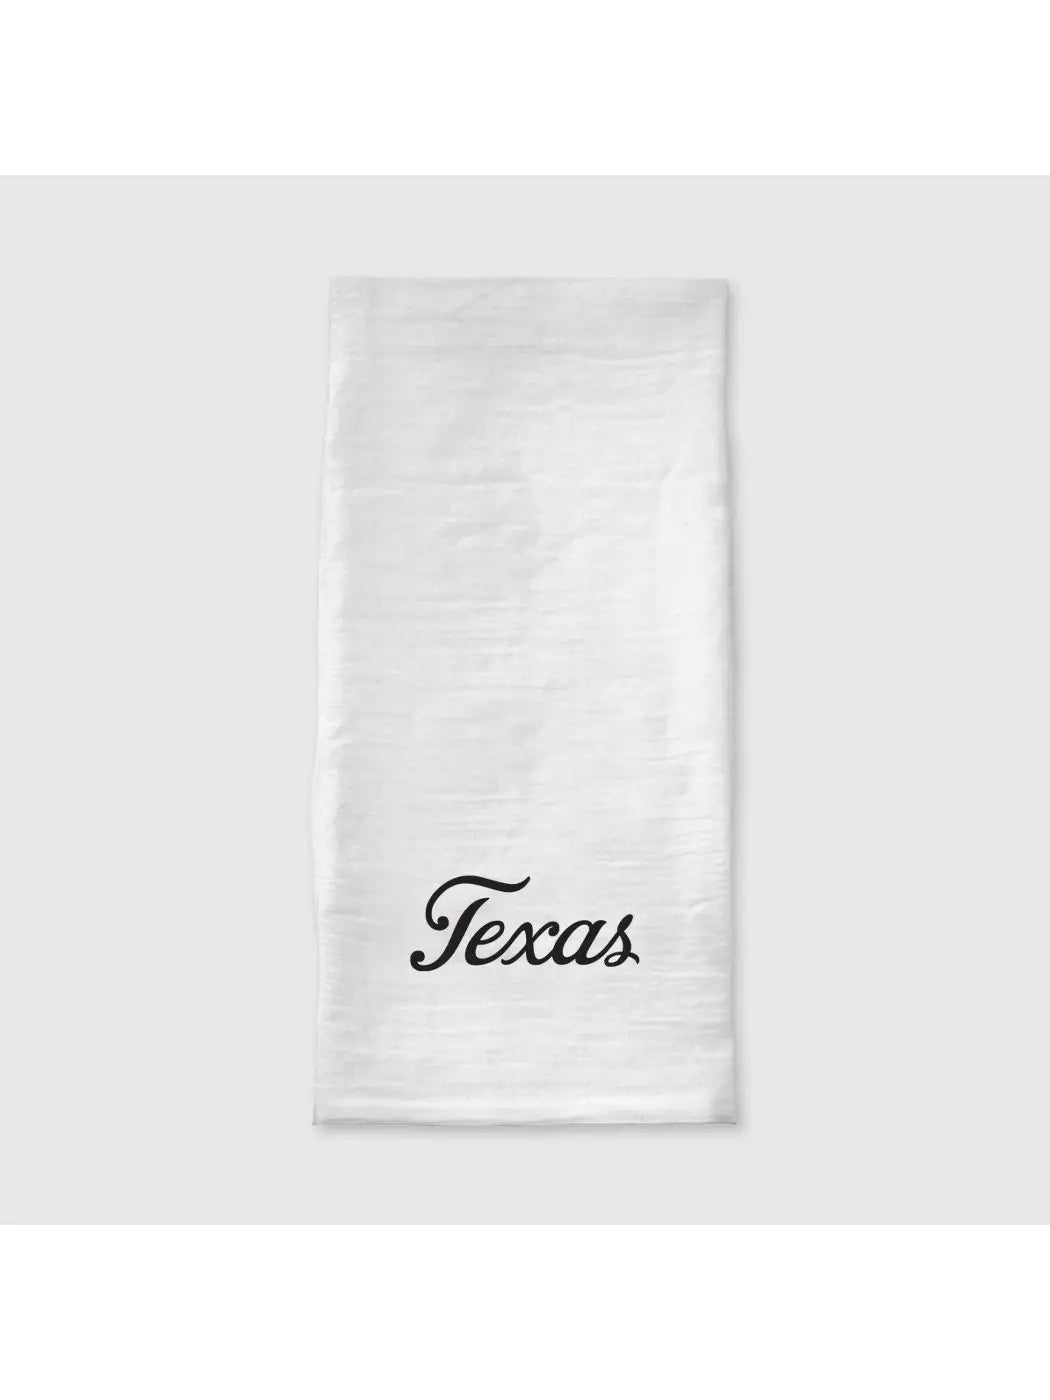 "Texas" Tea Towel